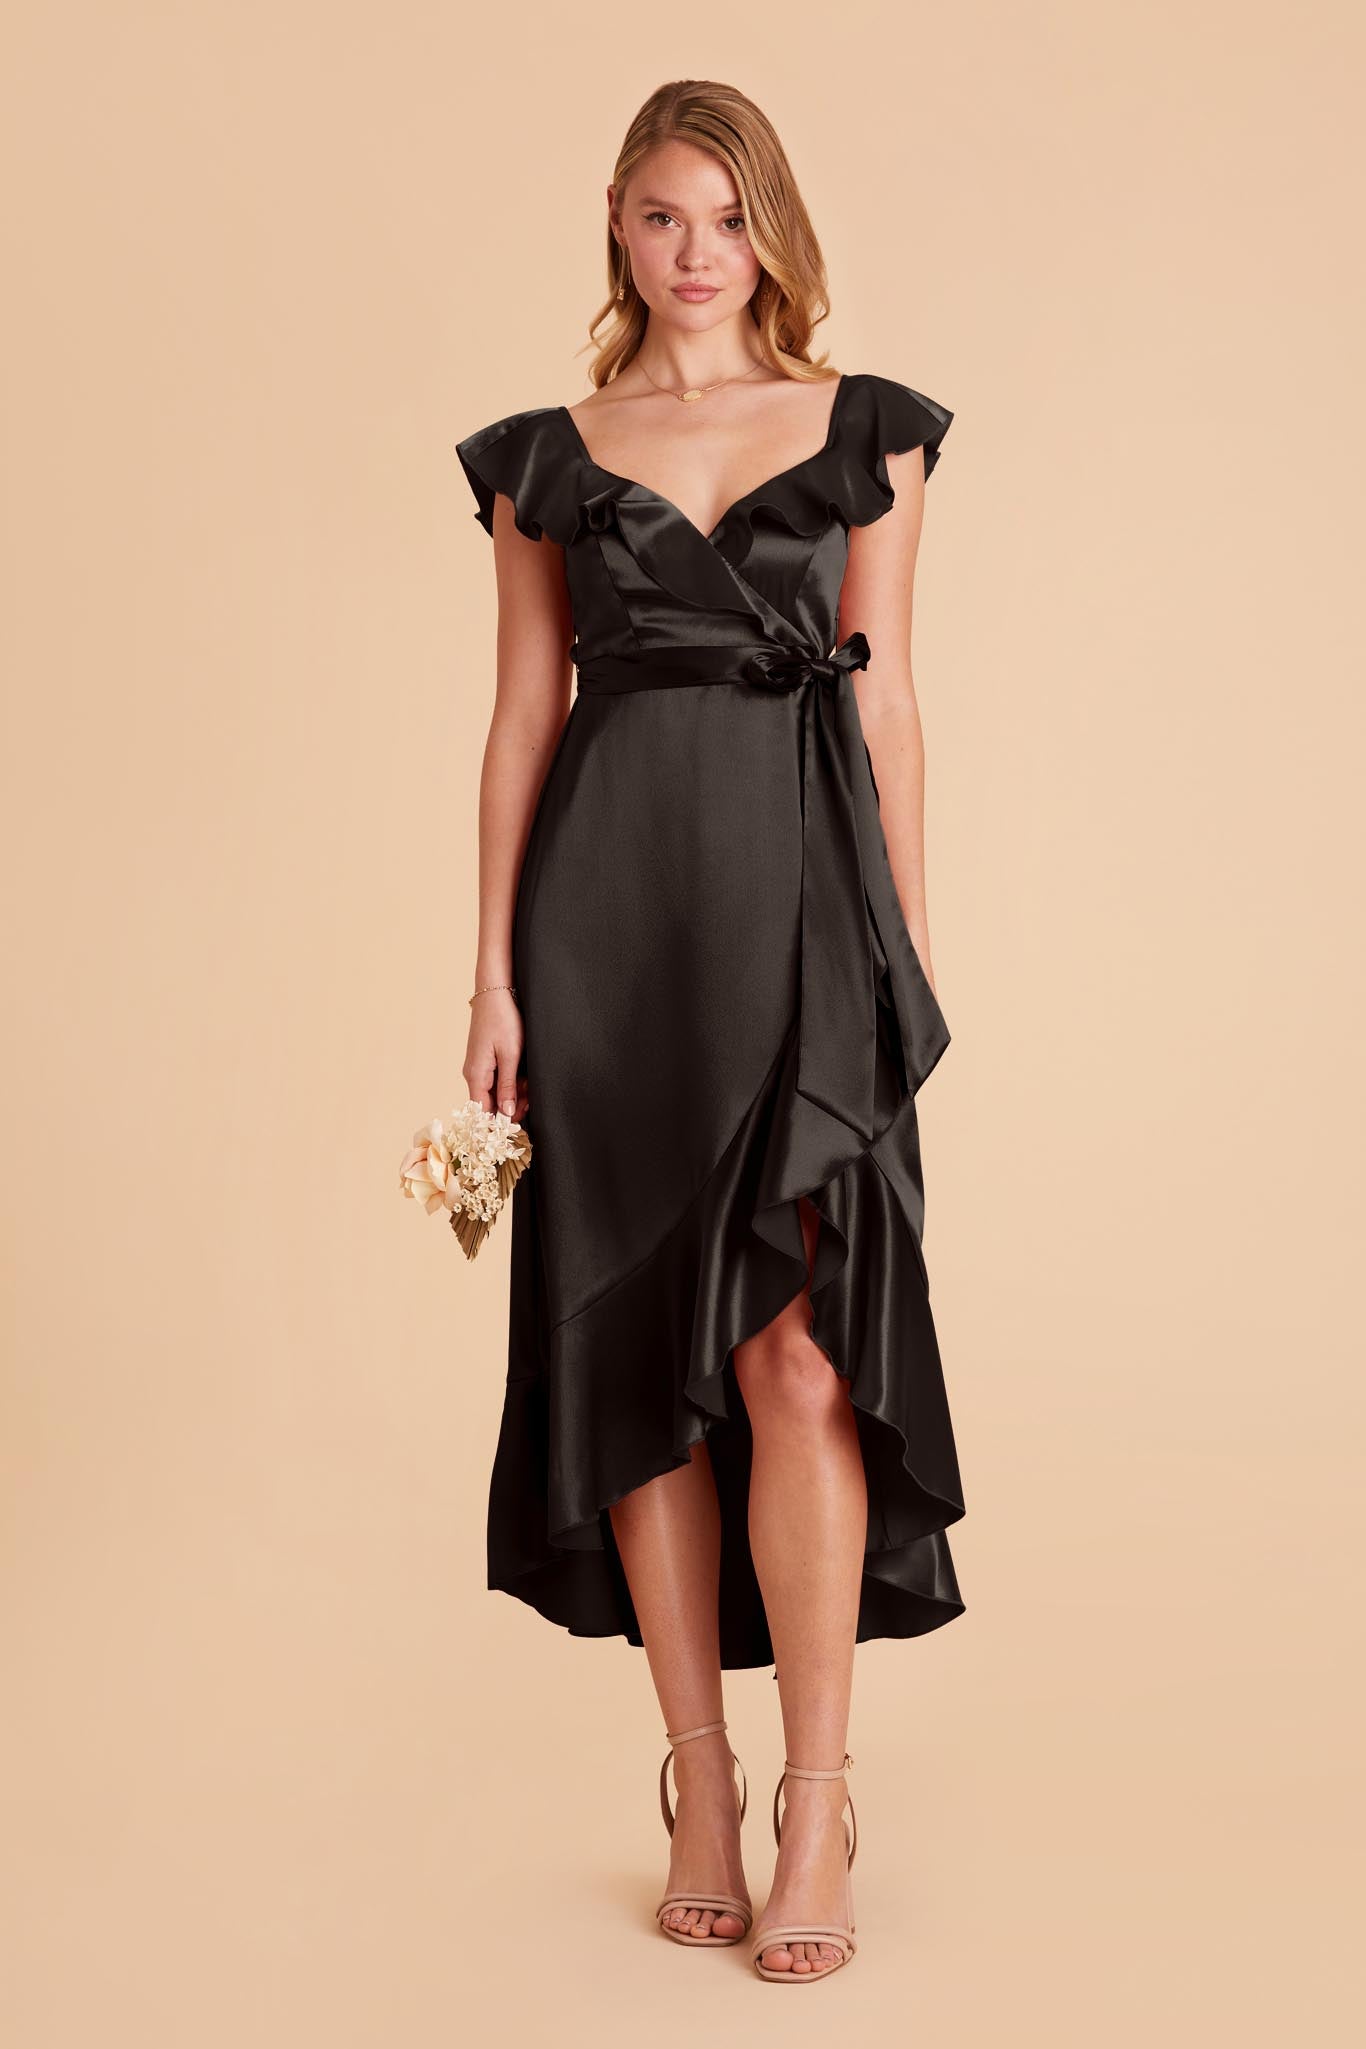 Black James Satin Midi Dress by Birdy Grey